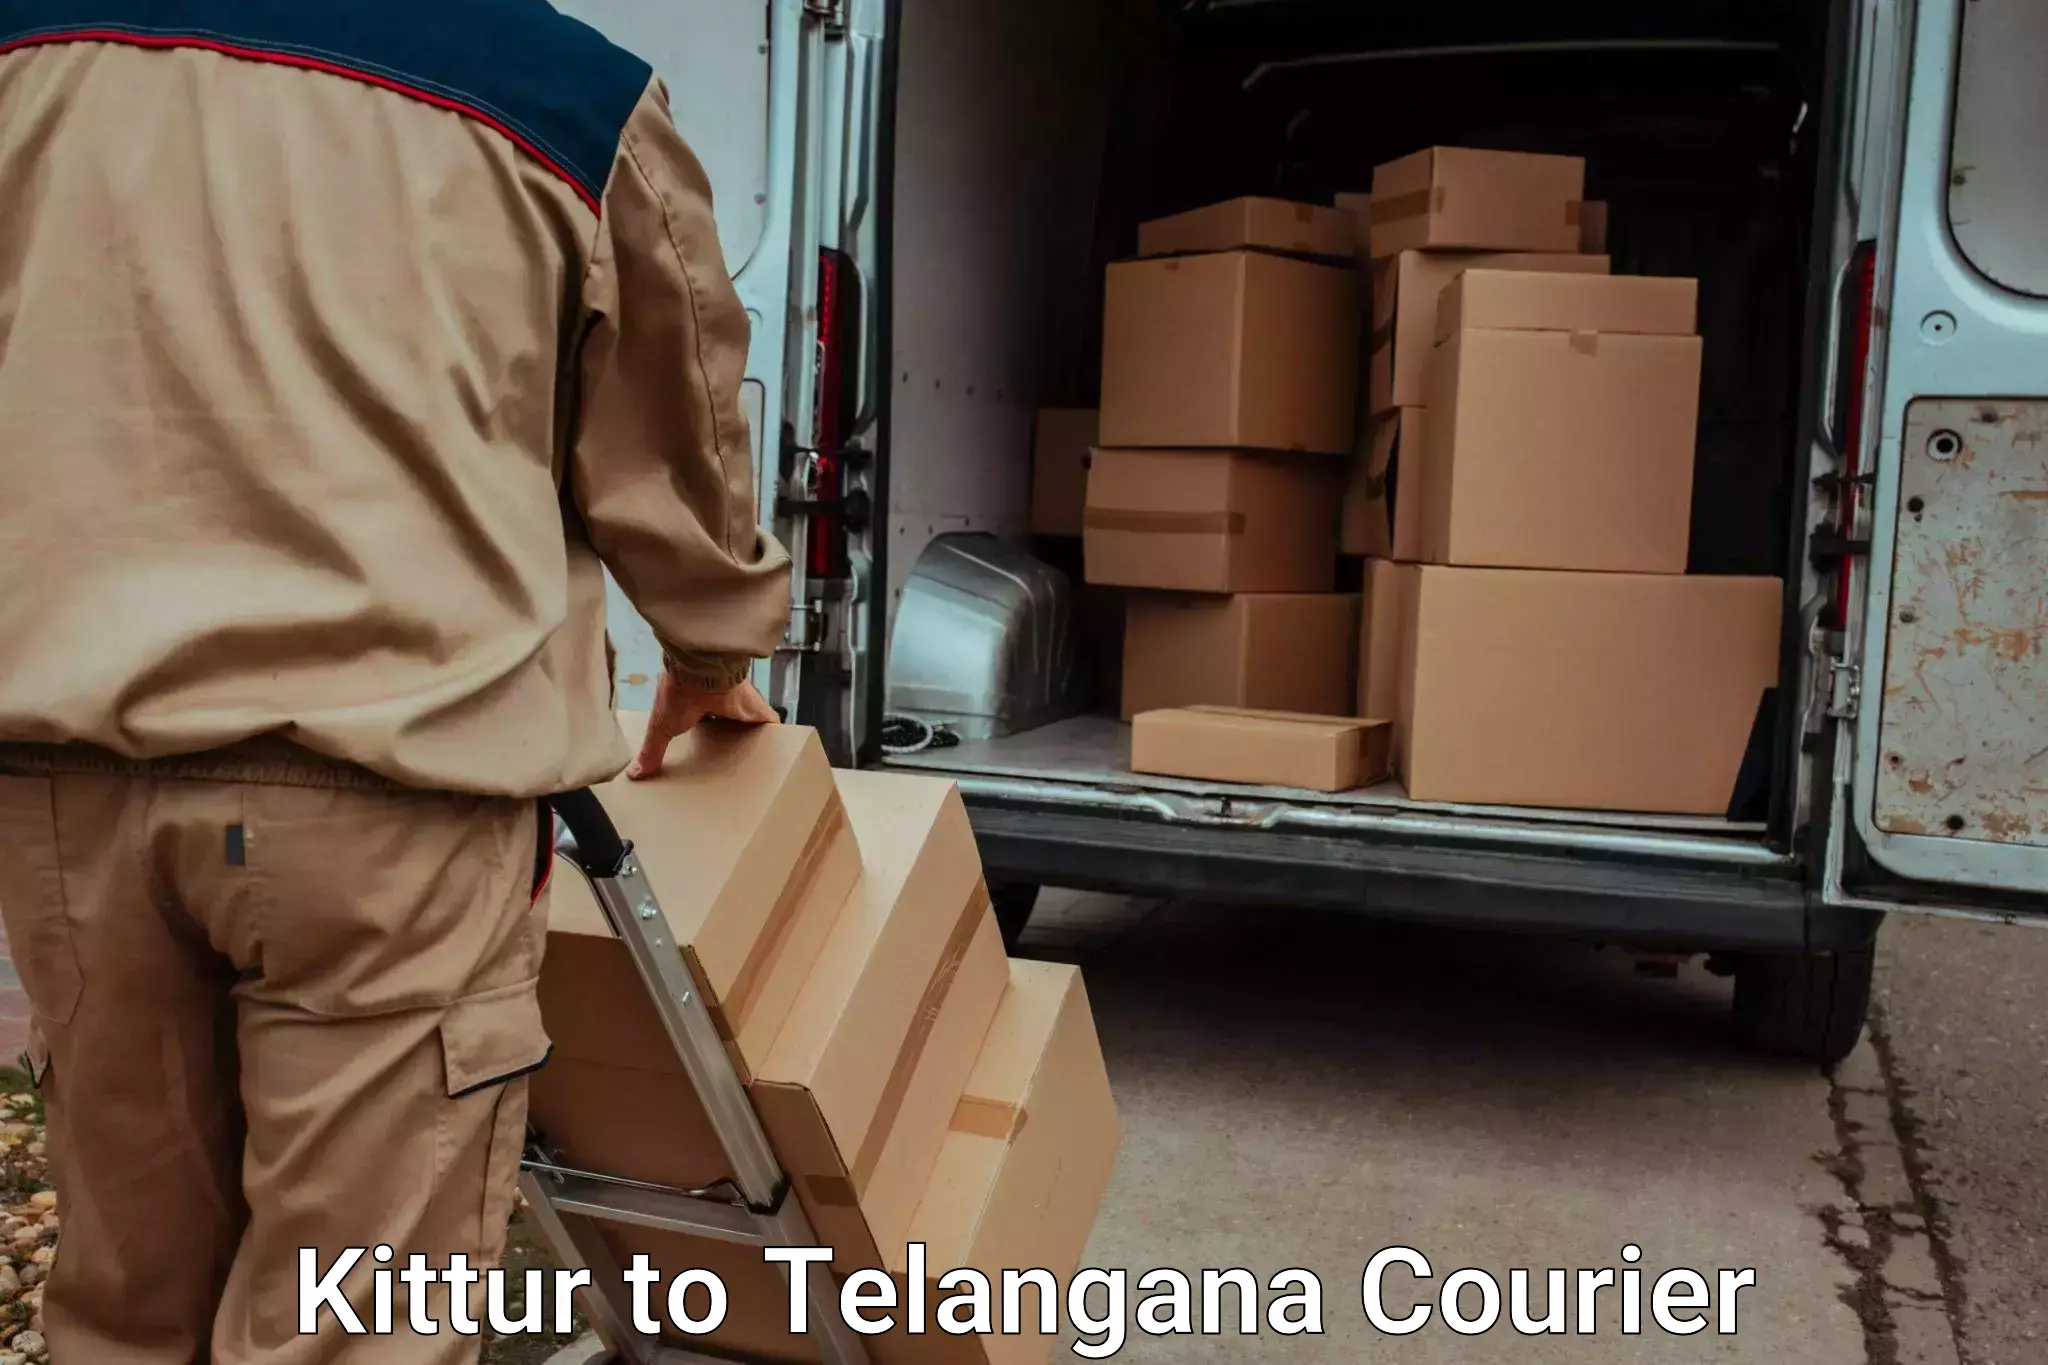 Stress-free household moving Kittur to Telangana